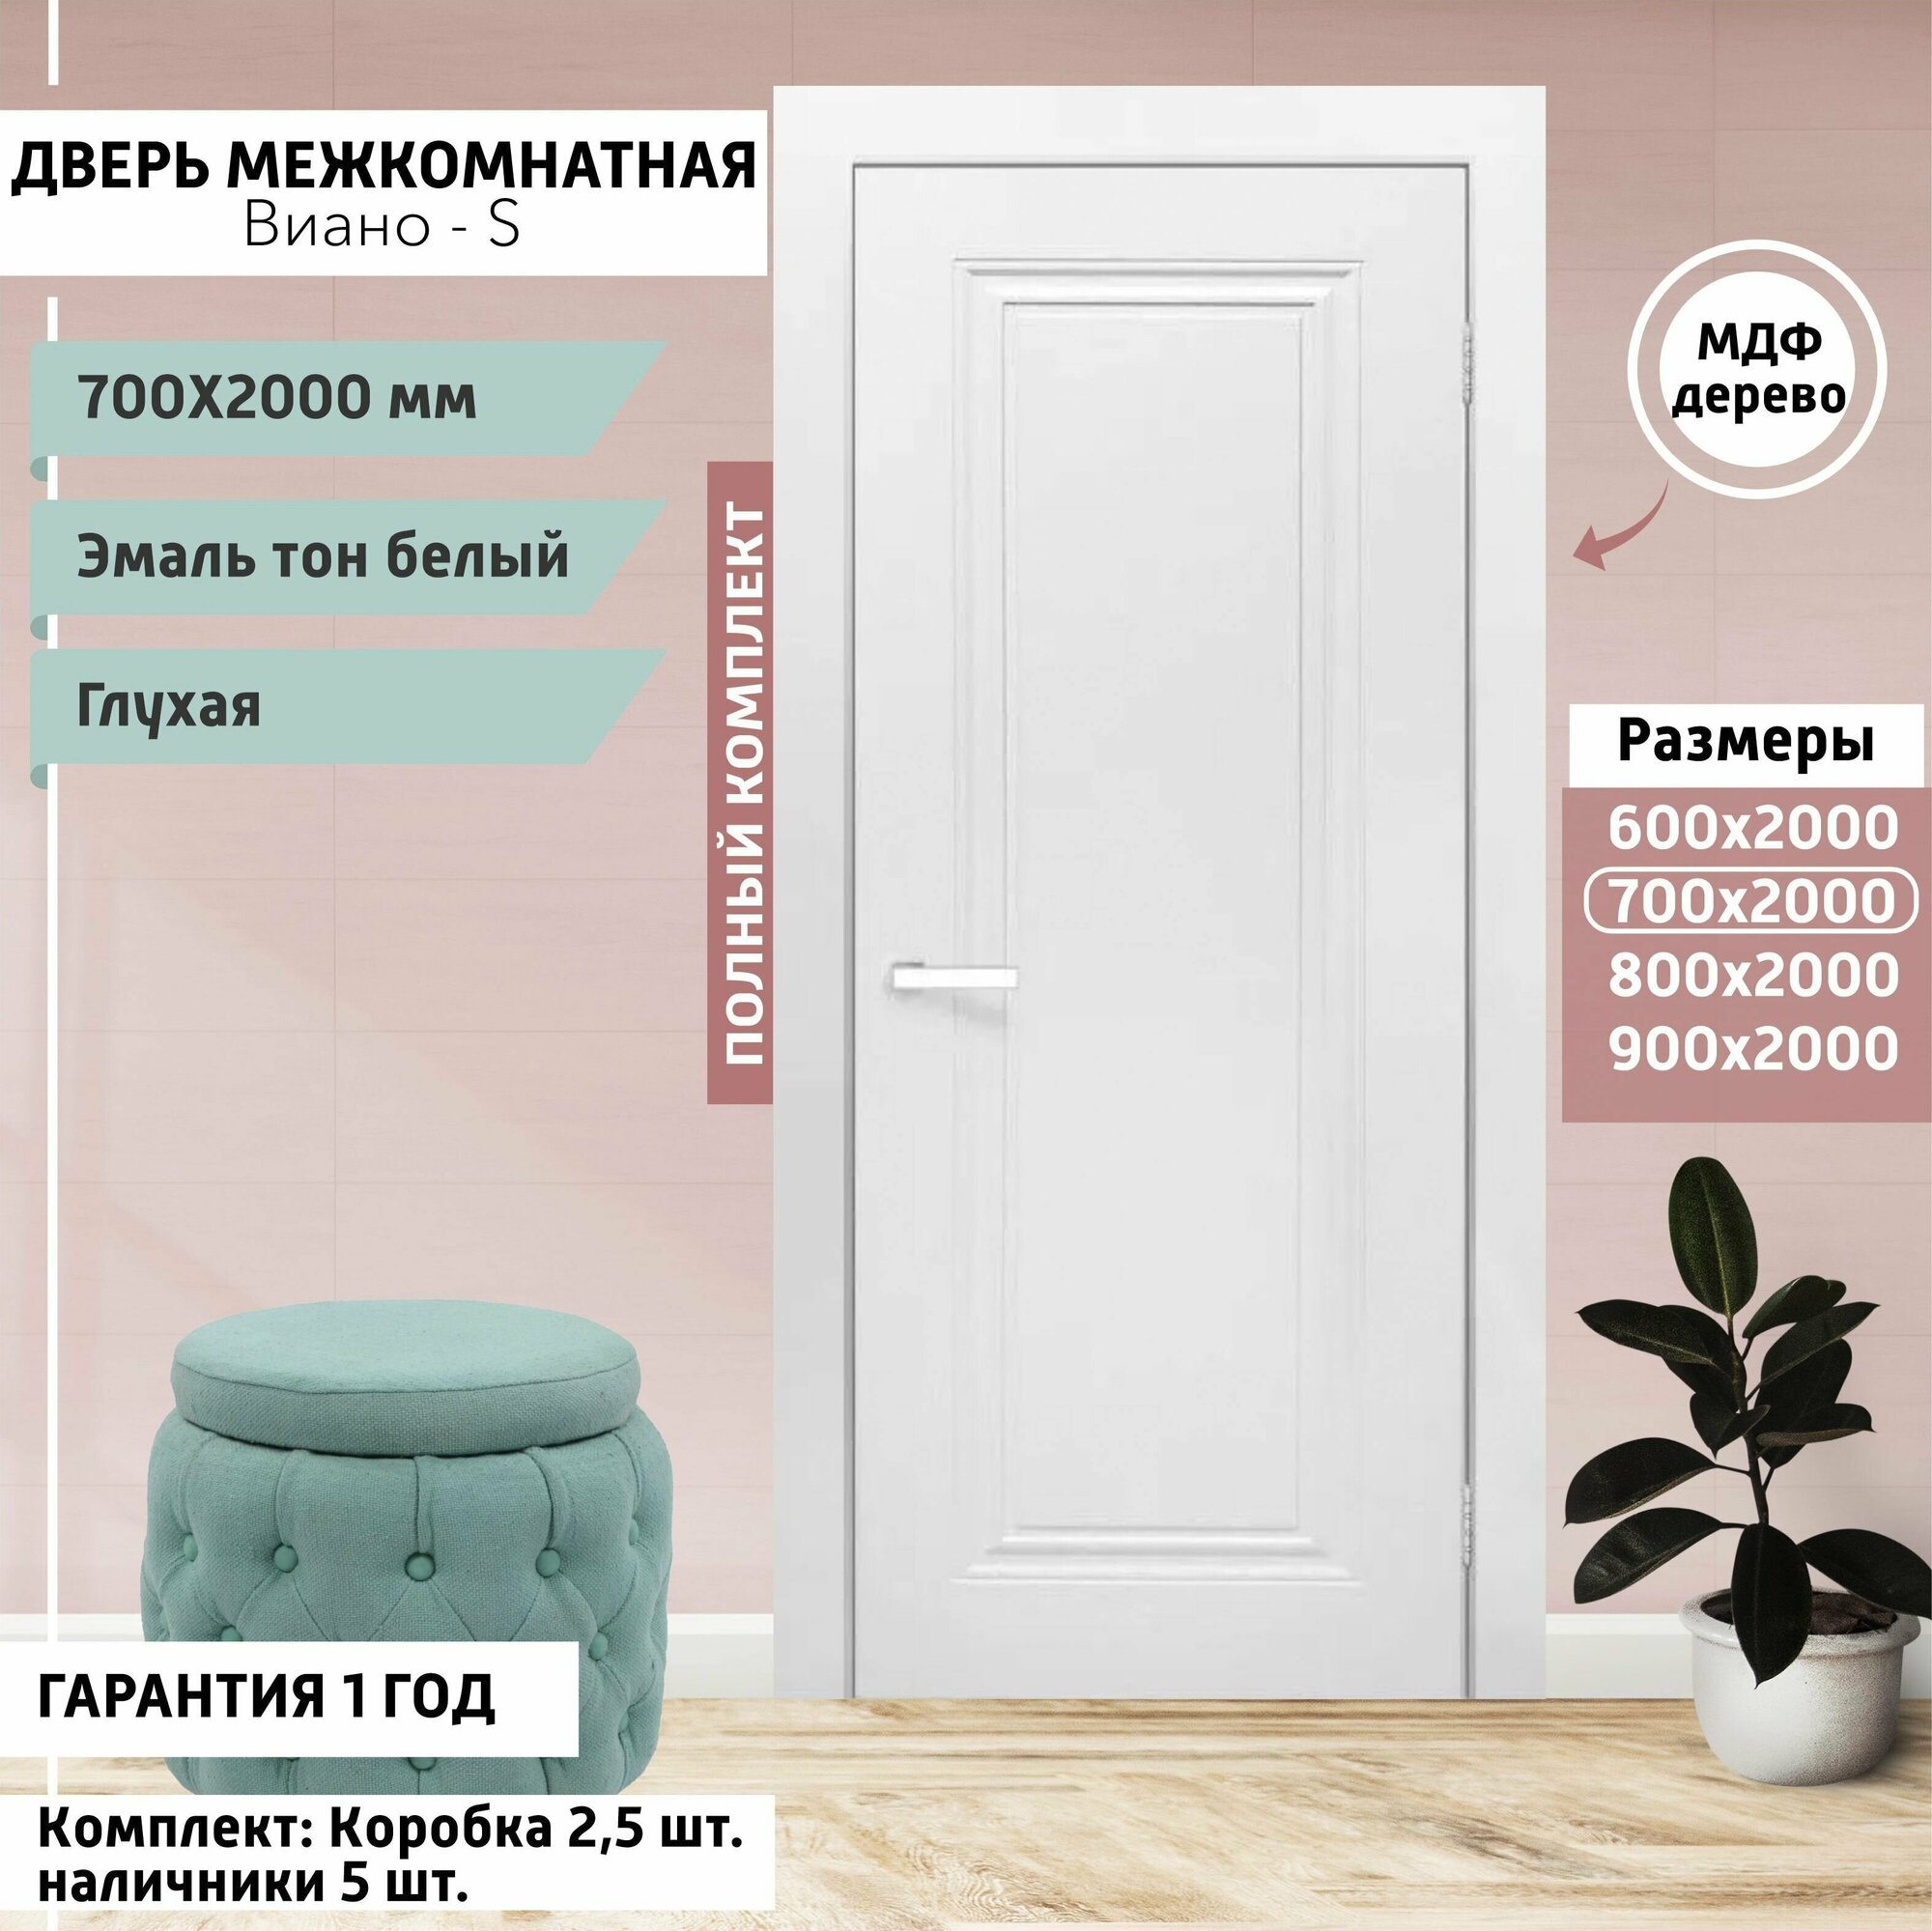 Дверь межкомнатная страсбург - 700х2000 мм, толщина 38 мм, эмаль, деревянная глухая, МДФ, тон Белый, комплект: полотно, коробка, наличник